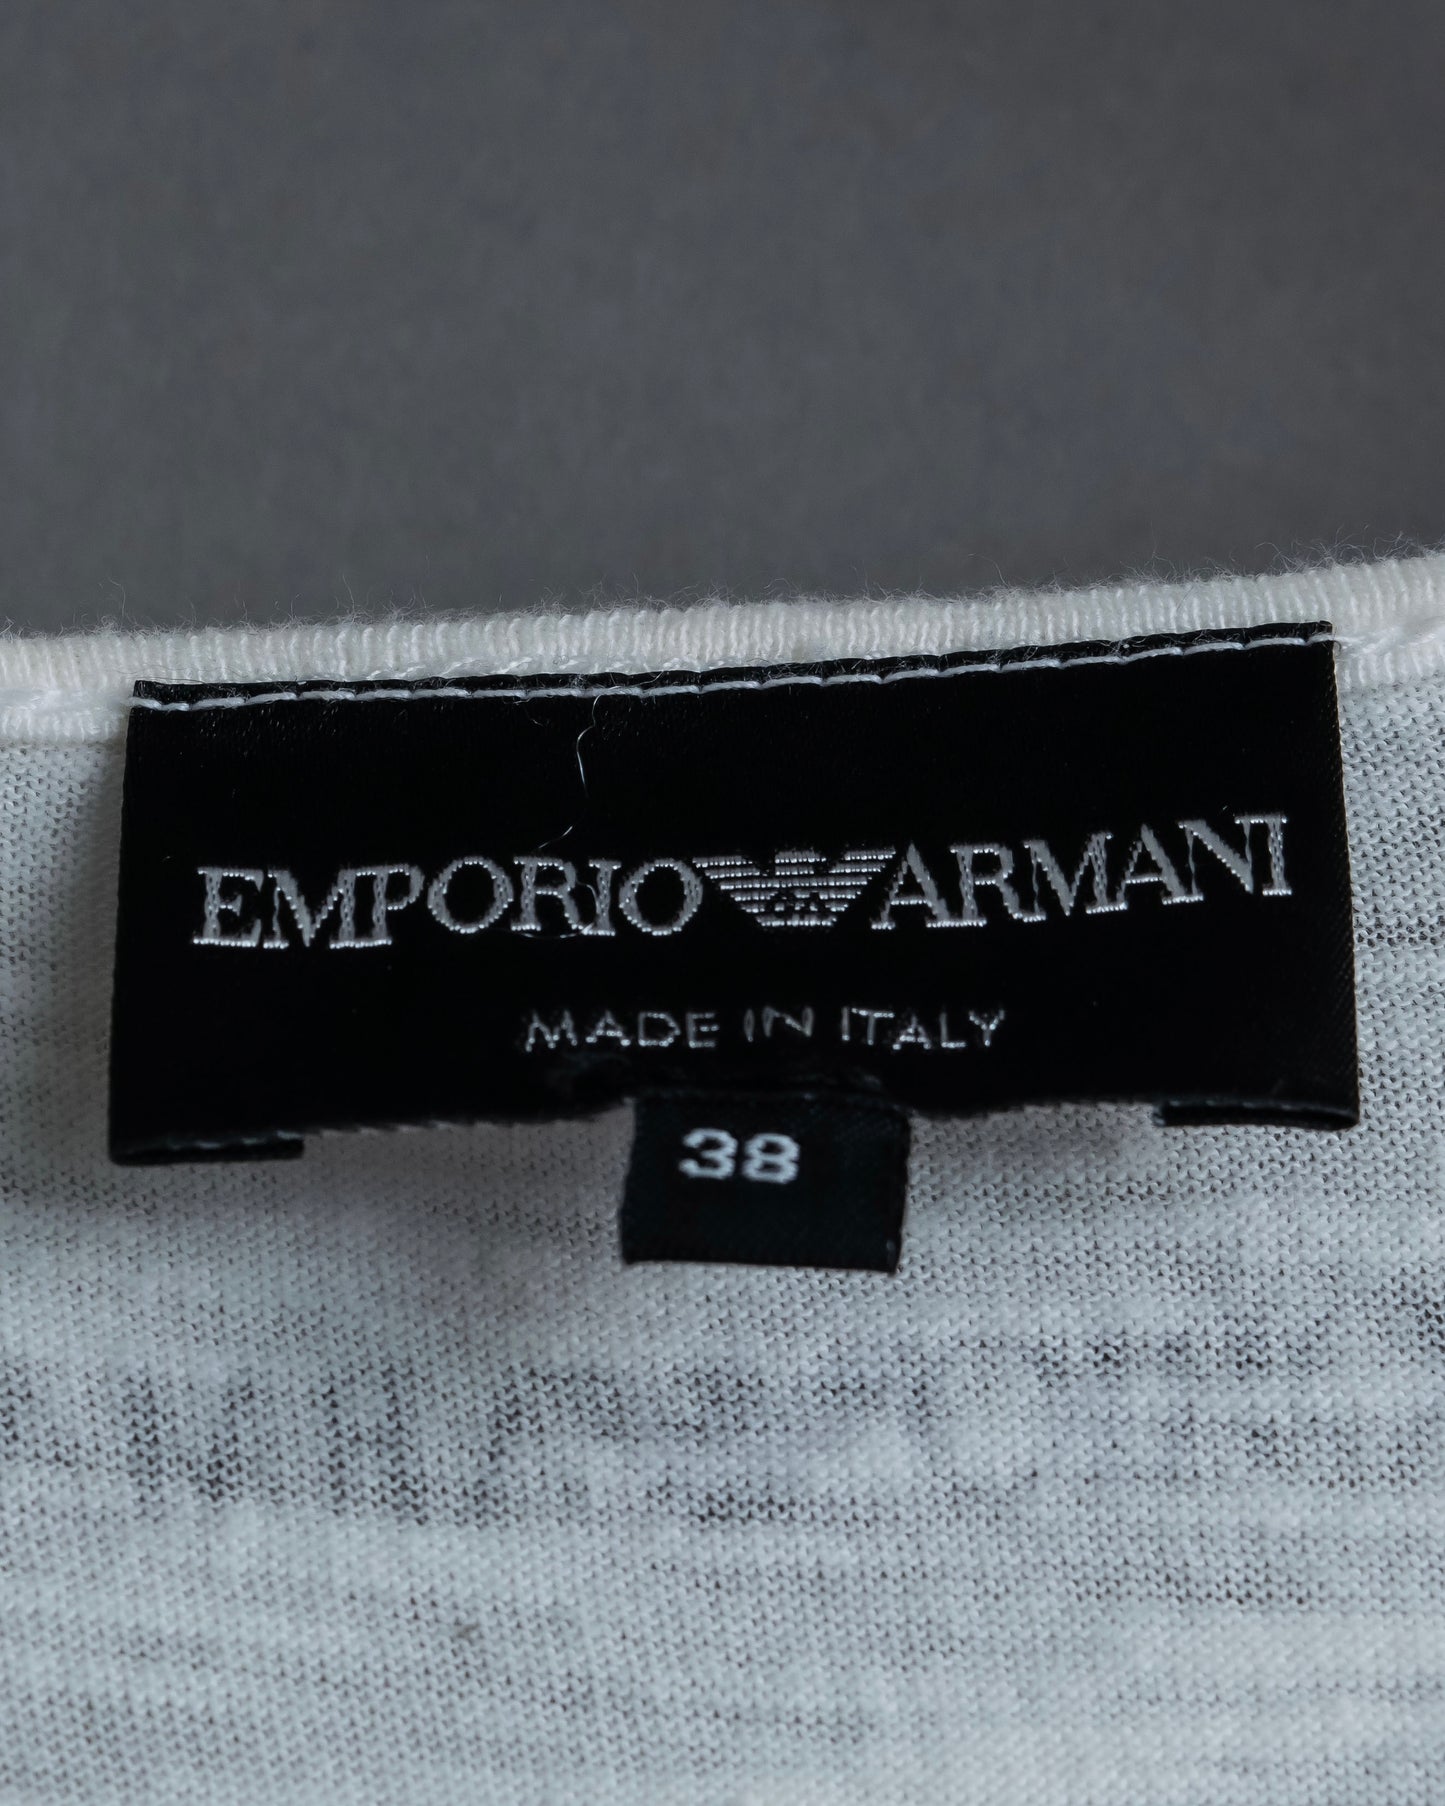 "Emporio Armani" Trompe l'oeil design T-shirt